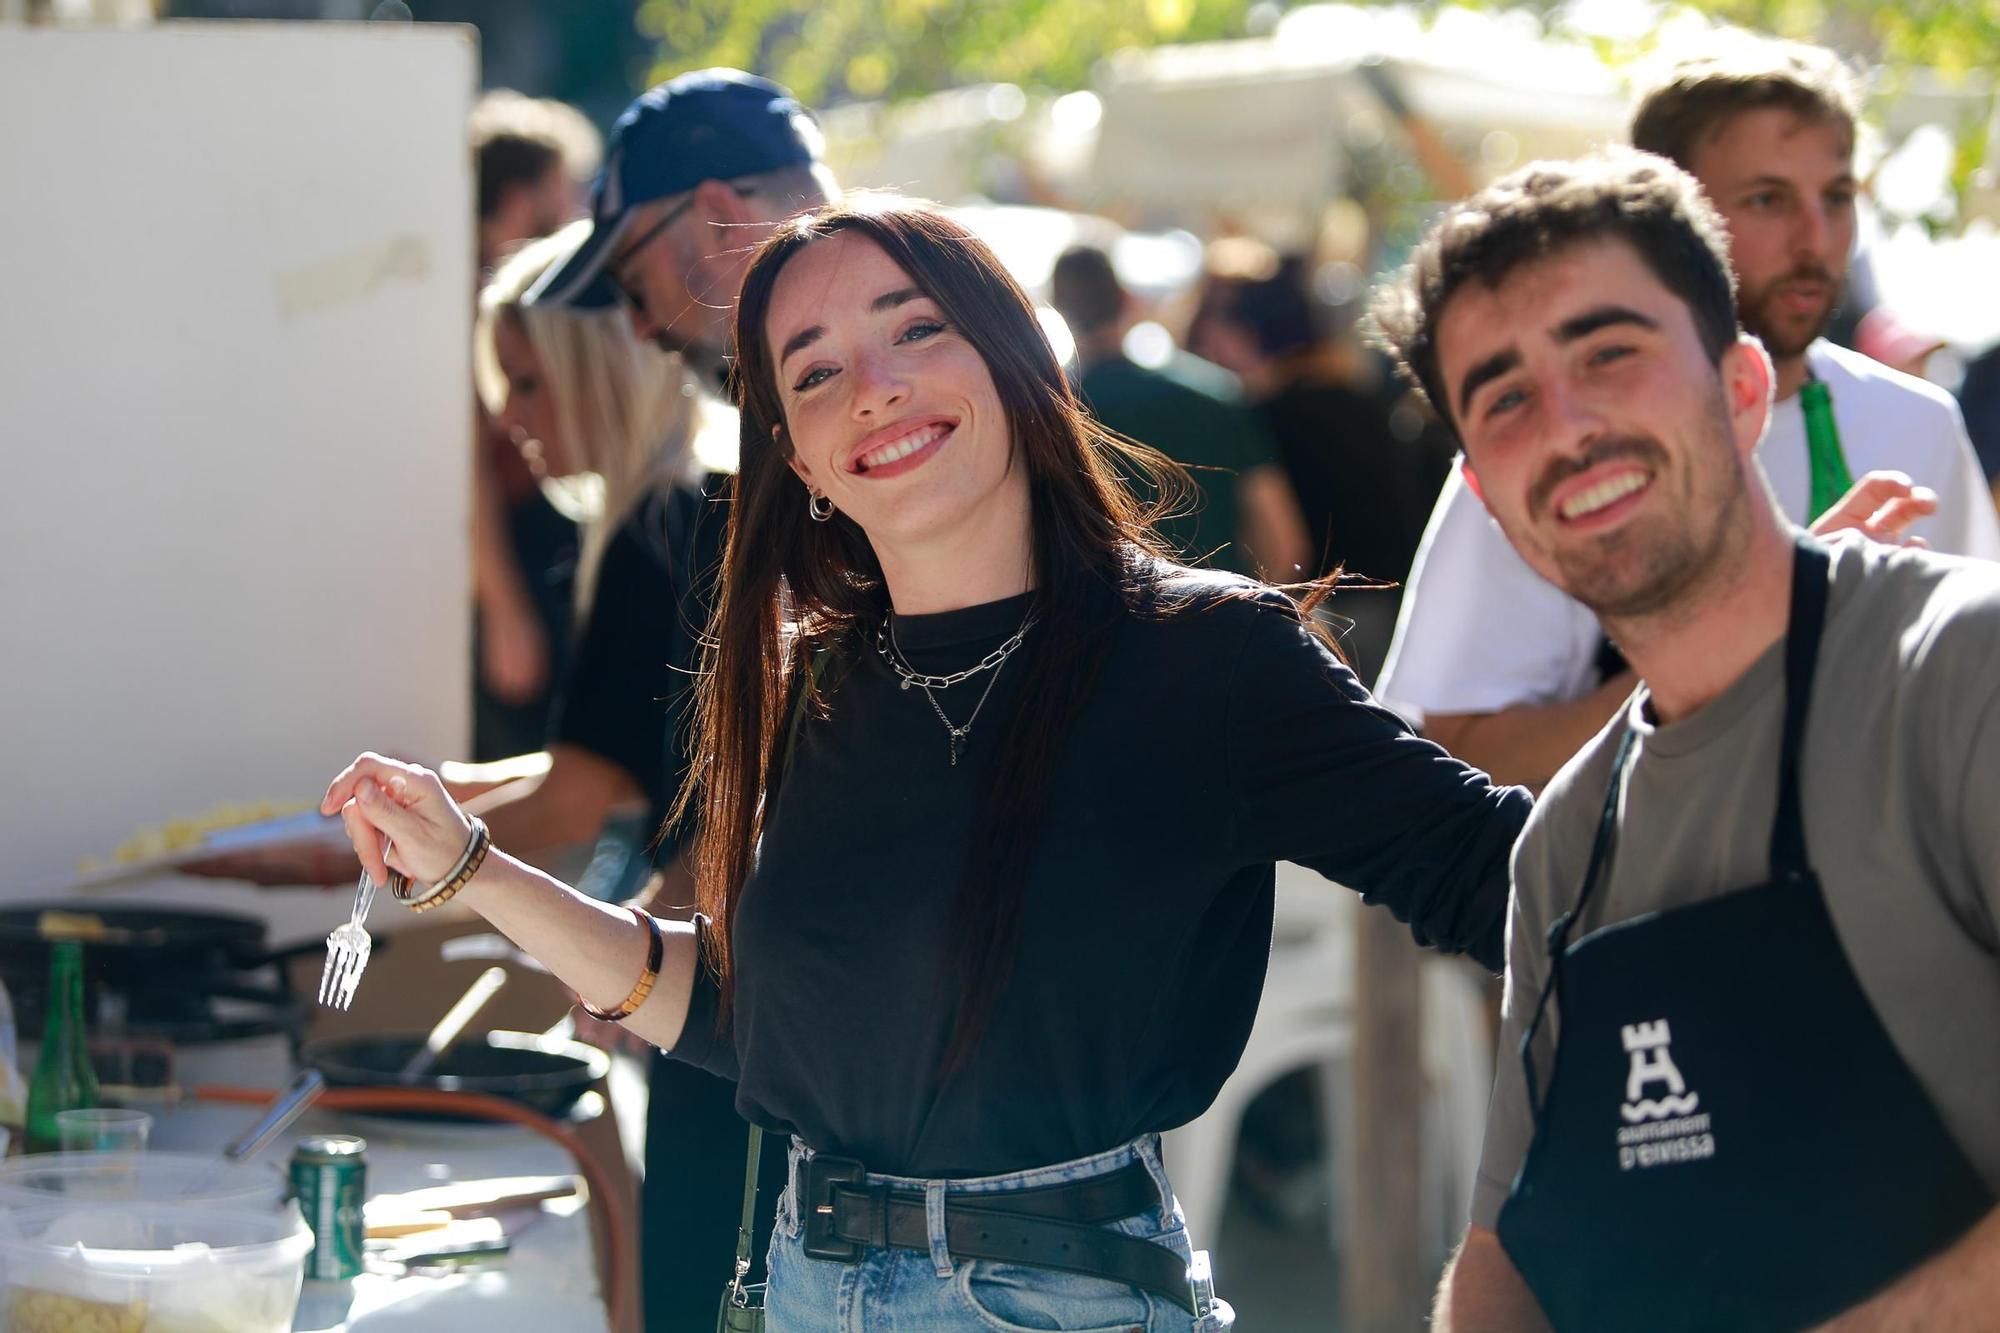 Mira aquí todas las fotos del concurso de la tortilla en Ibiza